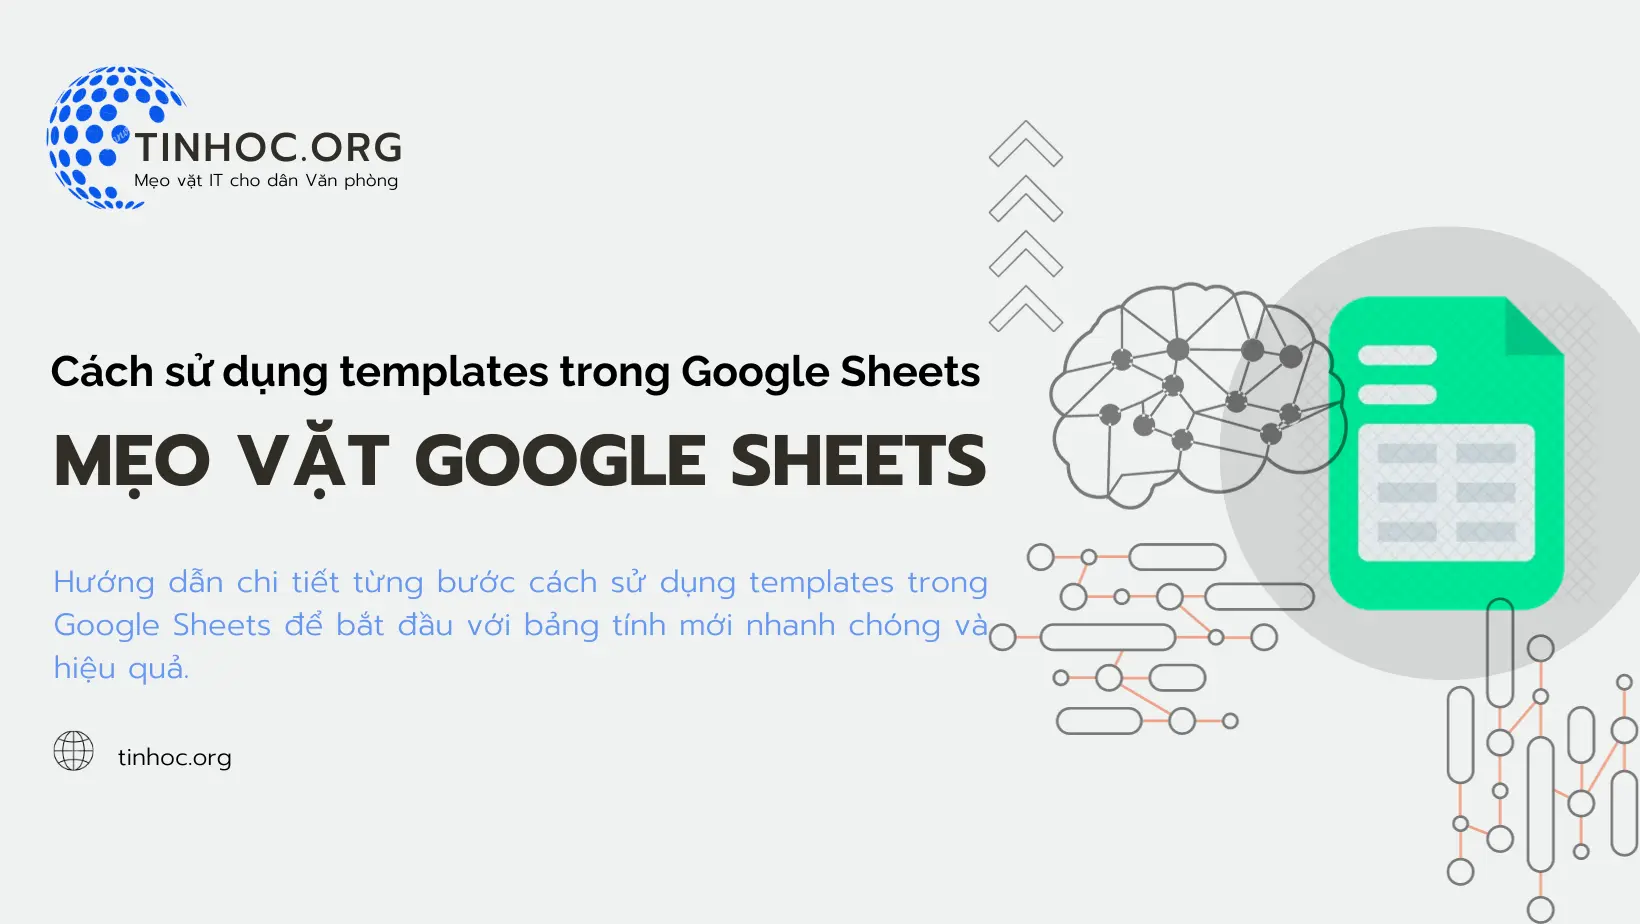 Hướng dẫn chi tiết từng bước cách sử dụng templates trong Google Sheets để bắt đầu với bảng tính mới nhanh chóng và hiệu quả.